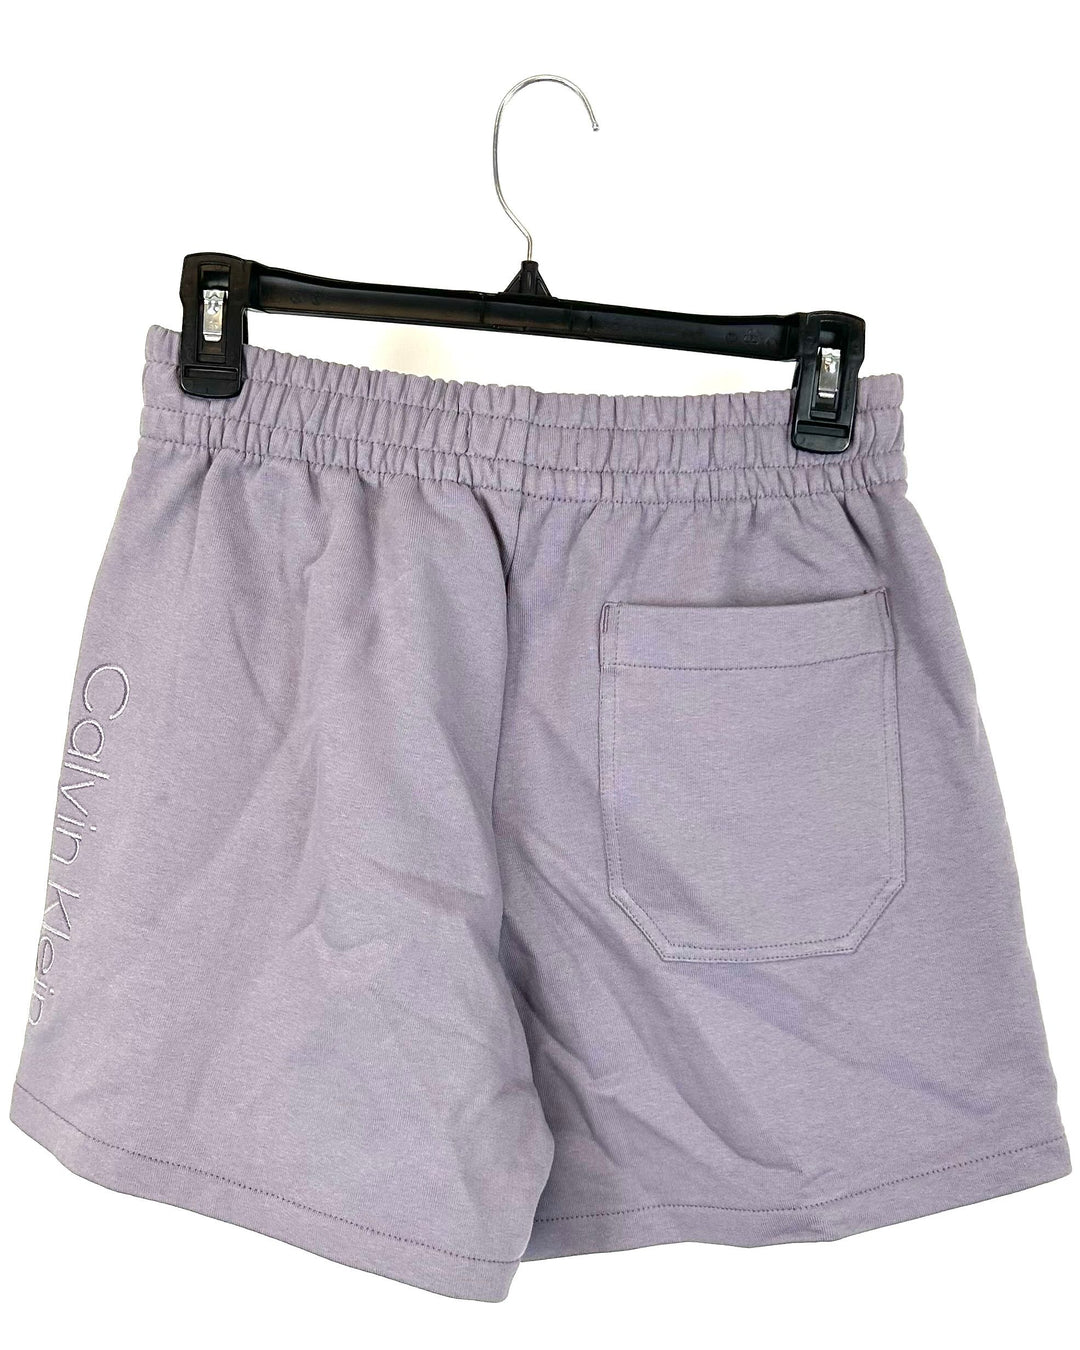 Purple Sweat Shorts - Small